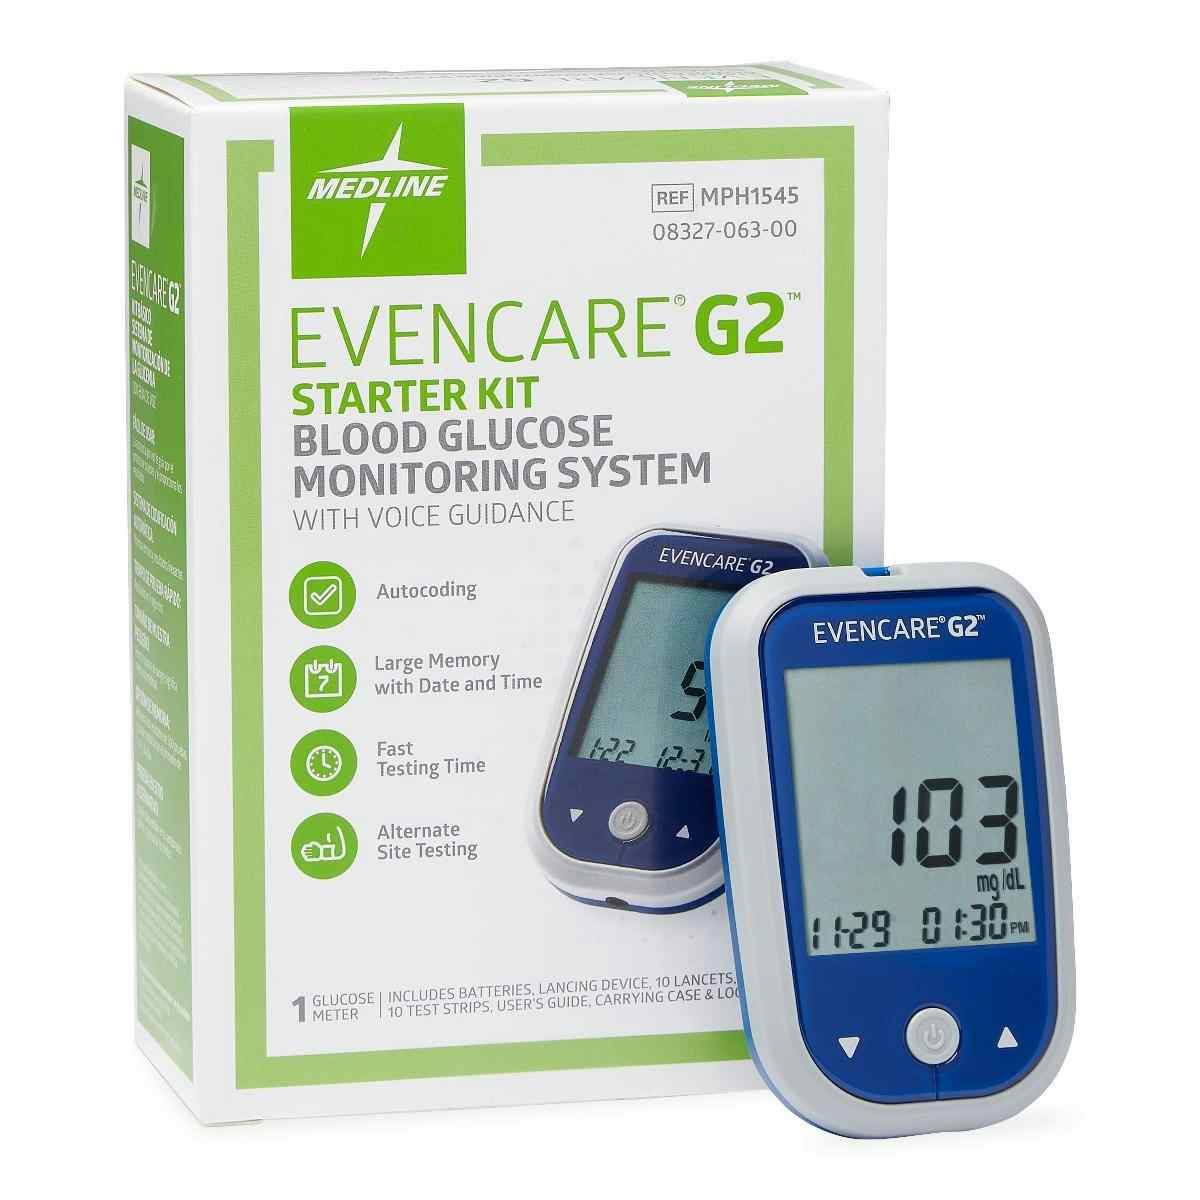 EvenCare G2 Blood Glucose Monitoring System Starter Kit